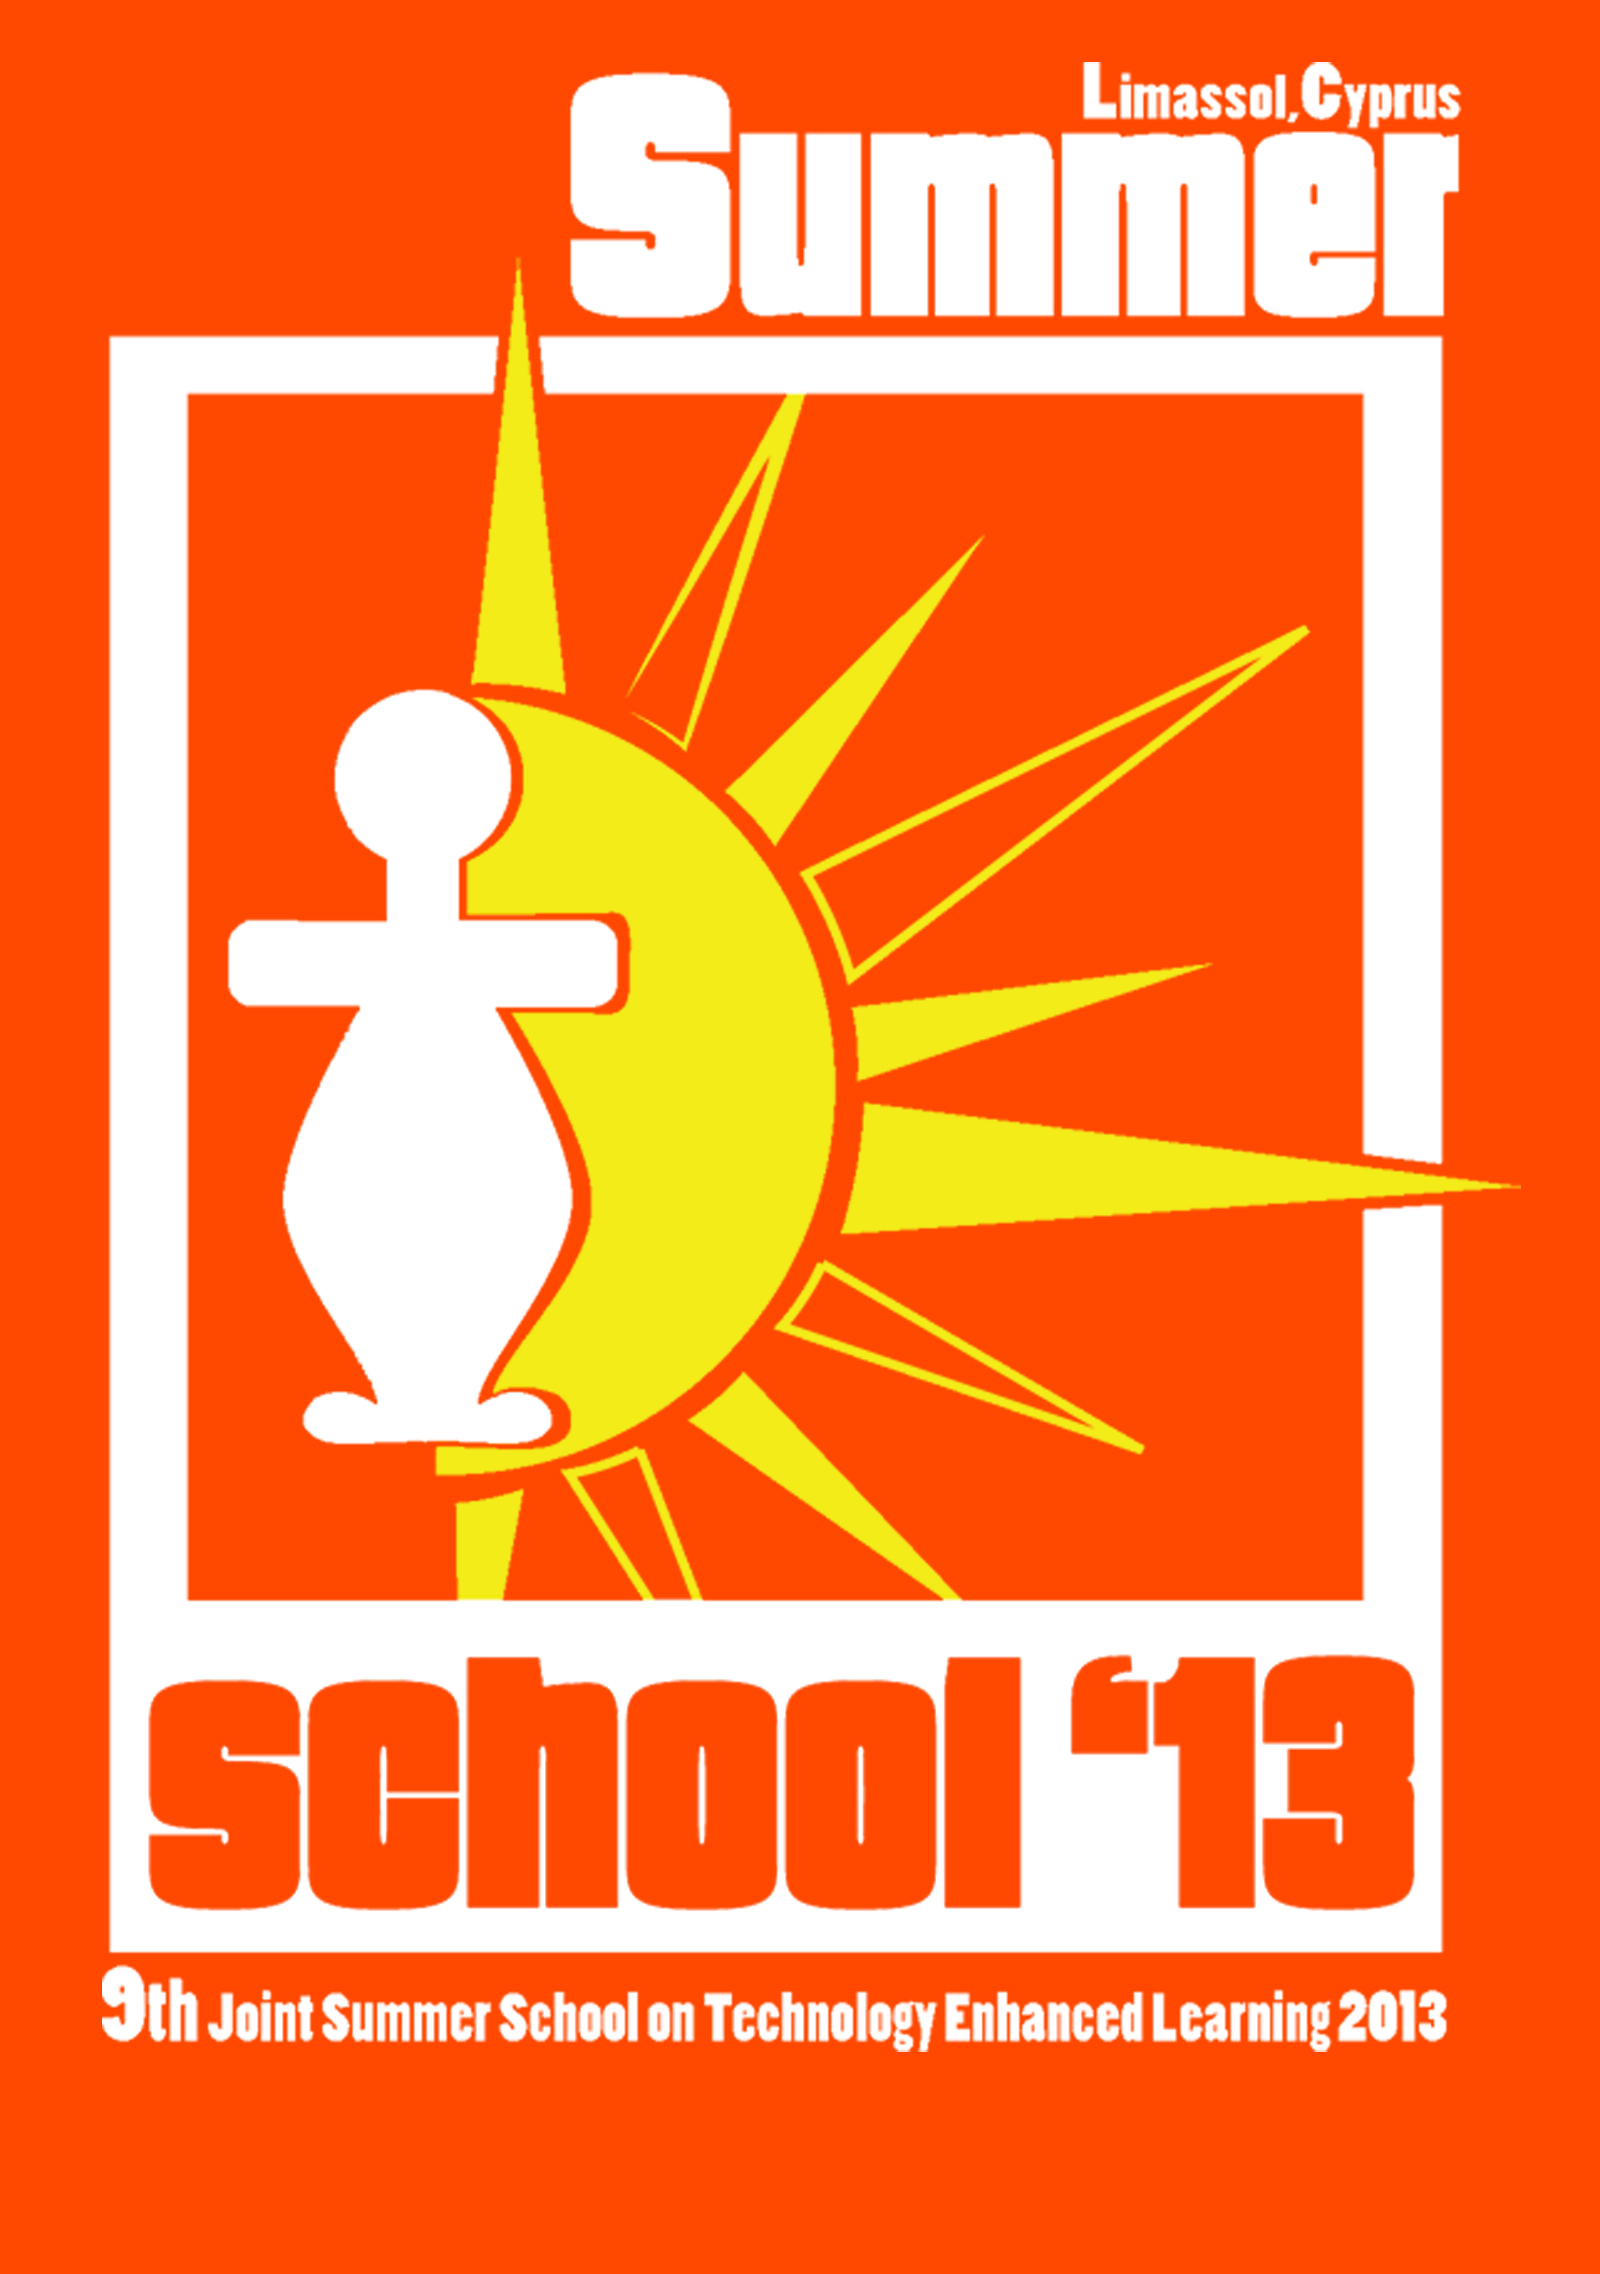 JTEL Summer School 2013 Logo